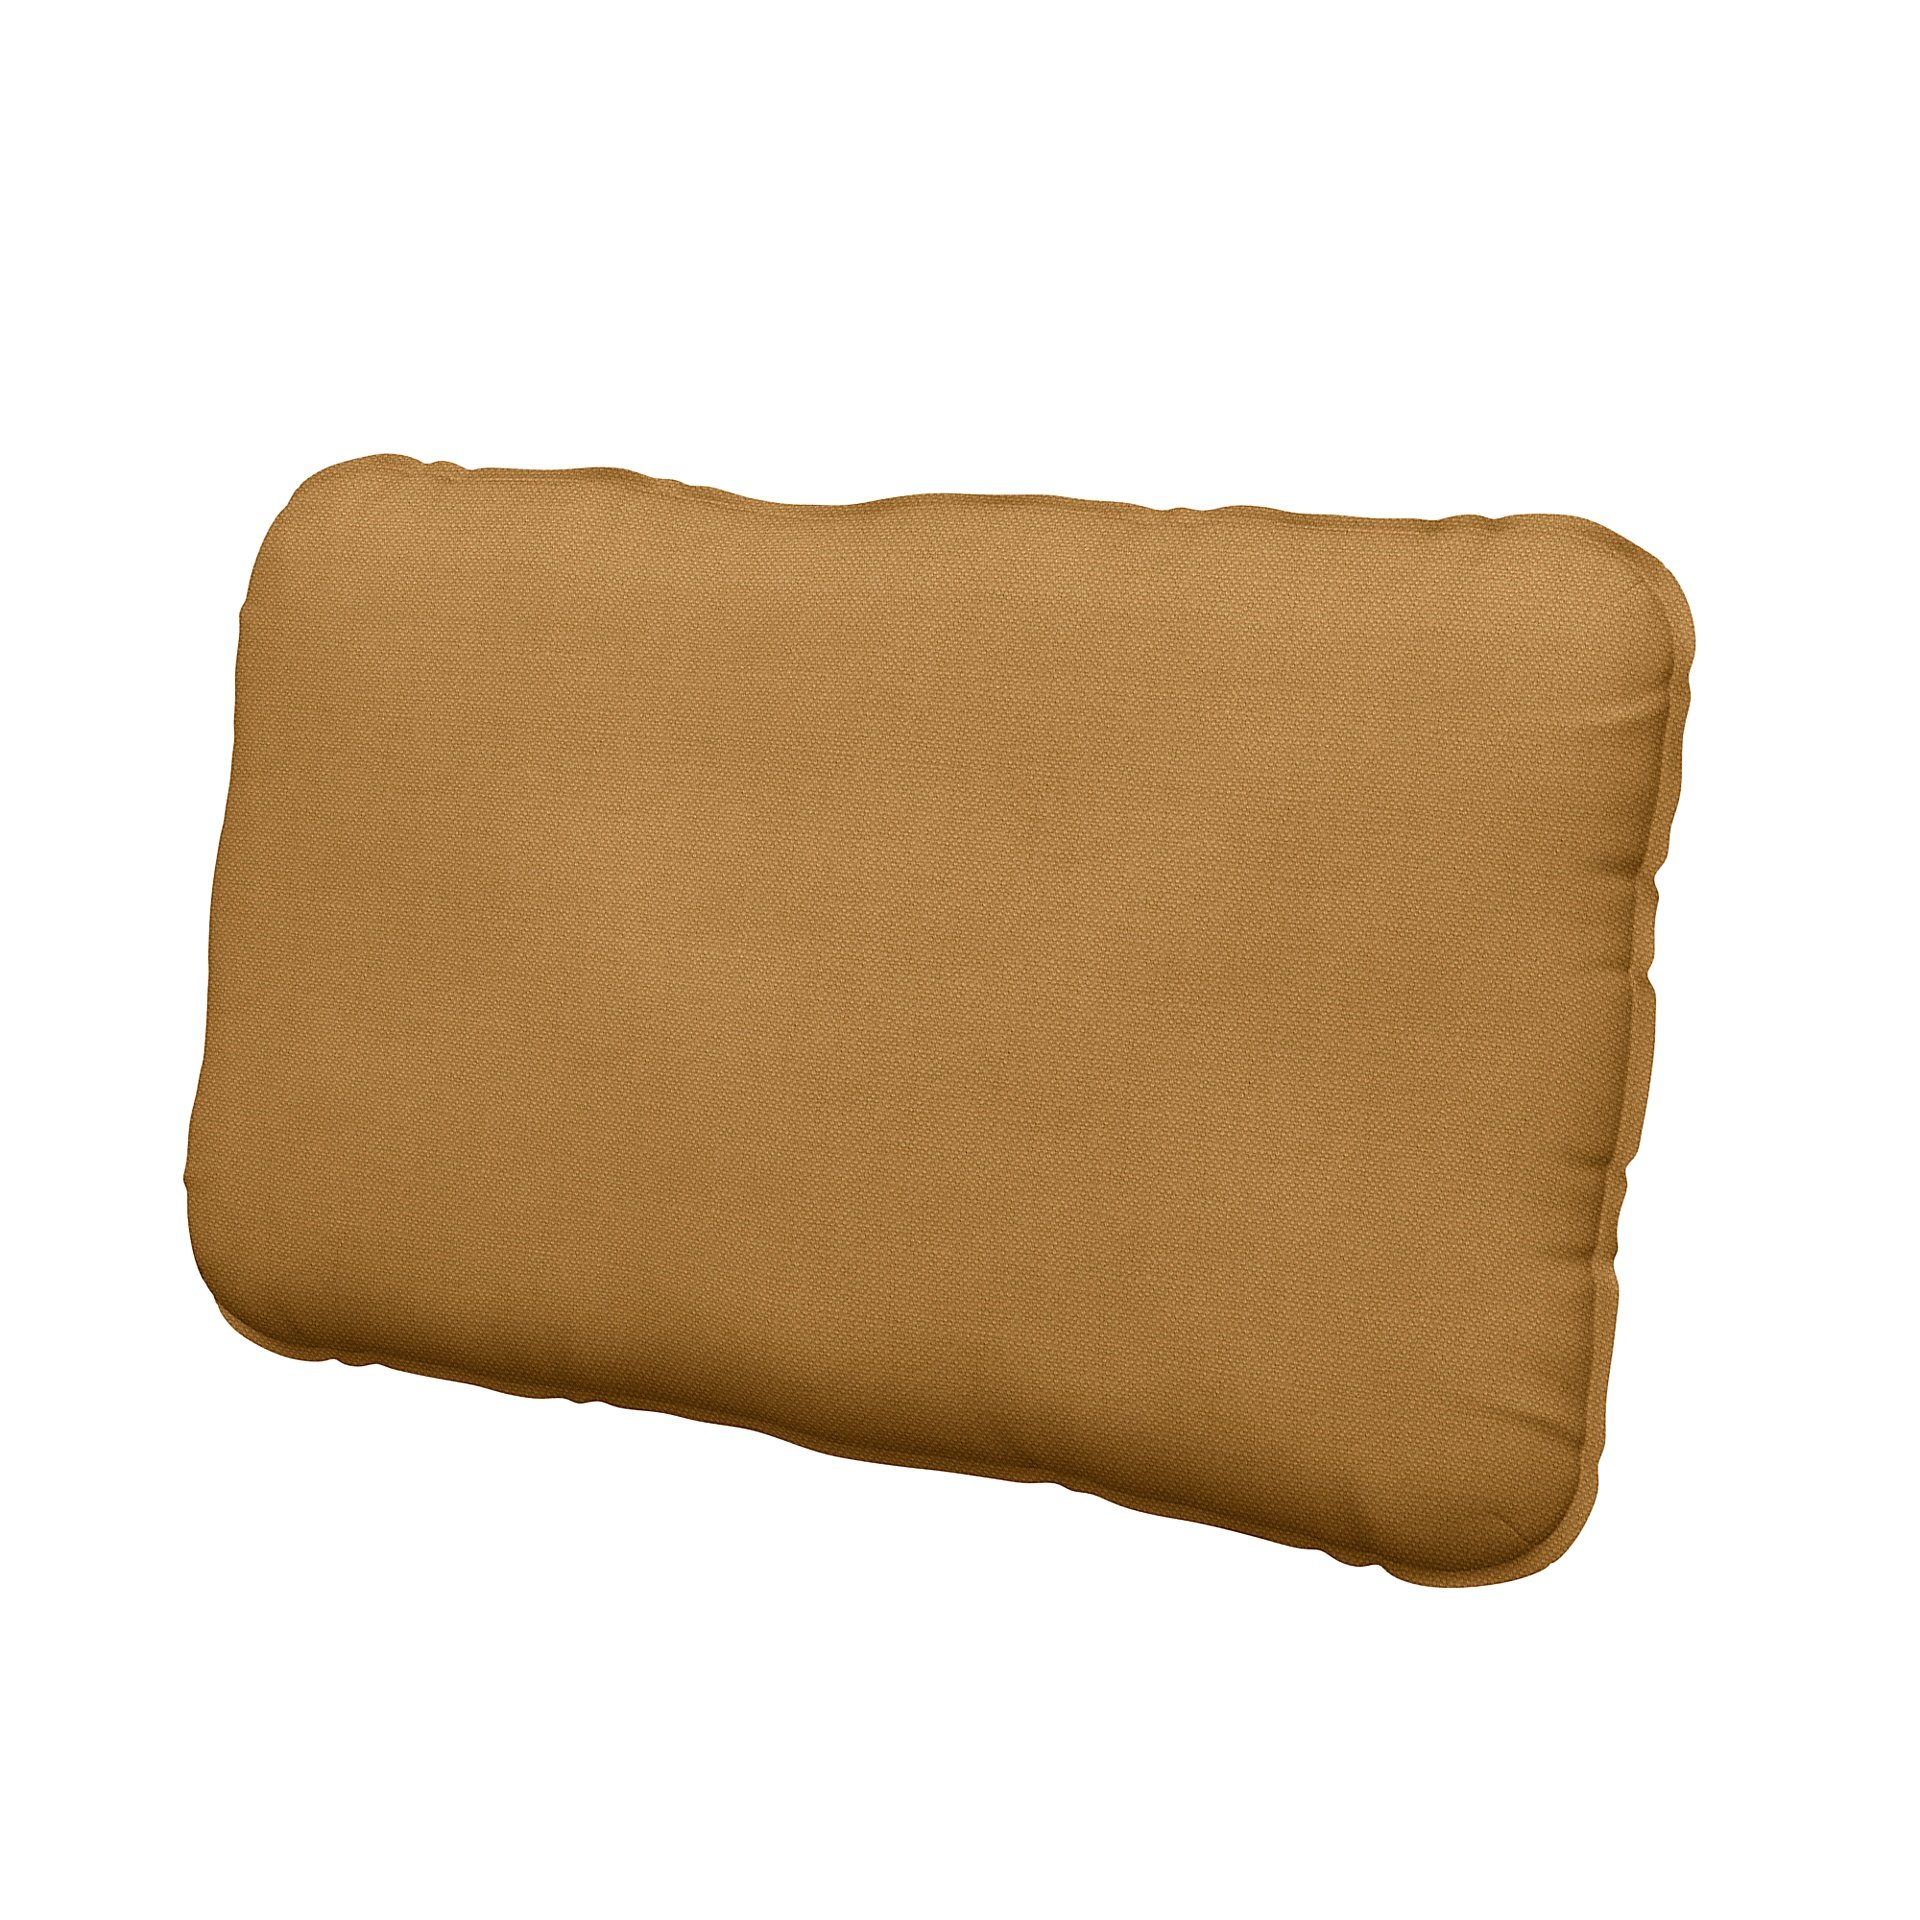 IKEA - Vallentuna back cushion cover 40x75cm, Mustard, Linen - Bemz